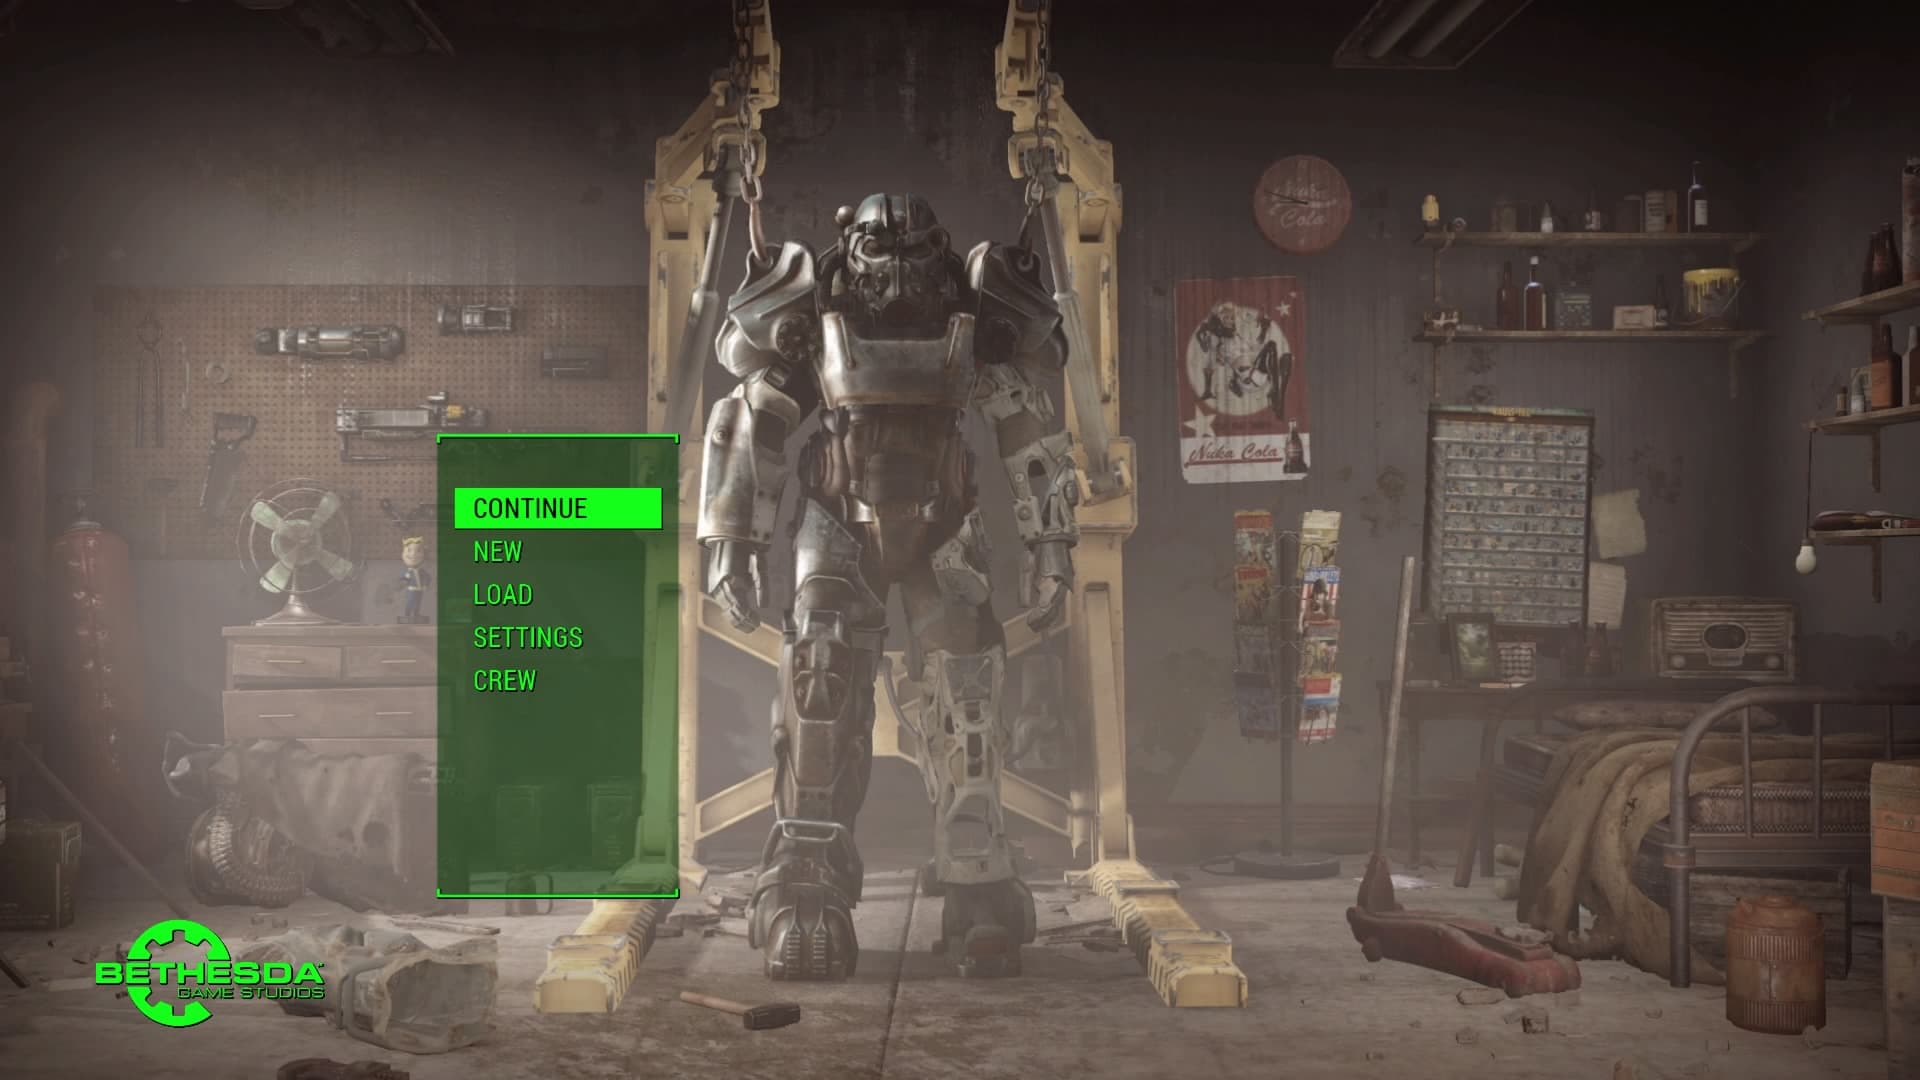 Fallout4 荒廃した世界の探索とクラフトでの拠点づくりが超楽しい Fallout4をプレイした感想と気づいた事まとめ あまげー